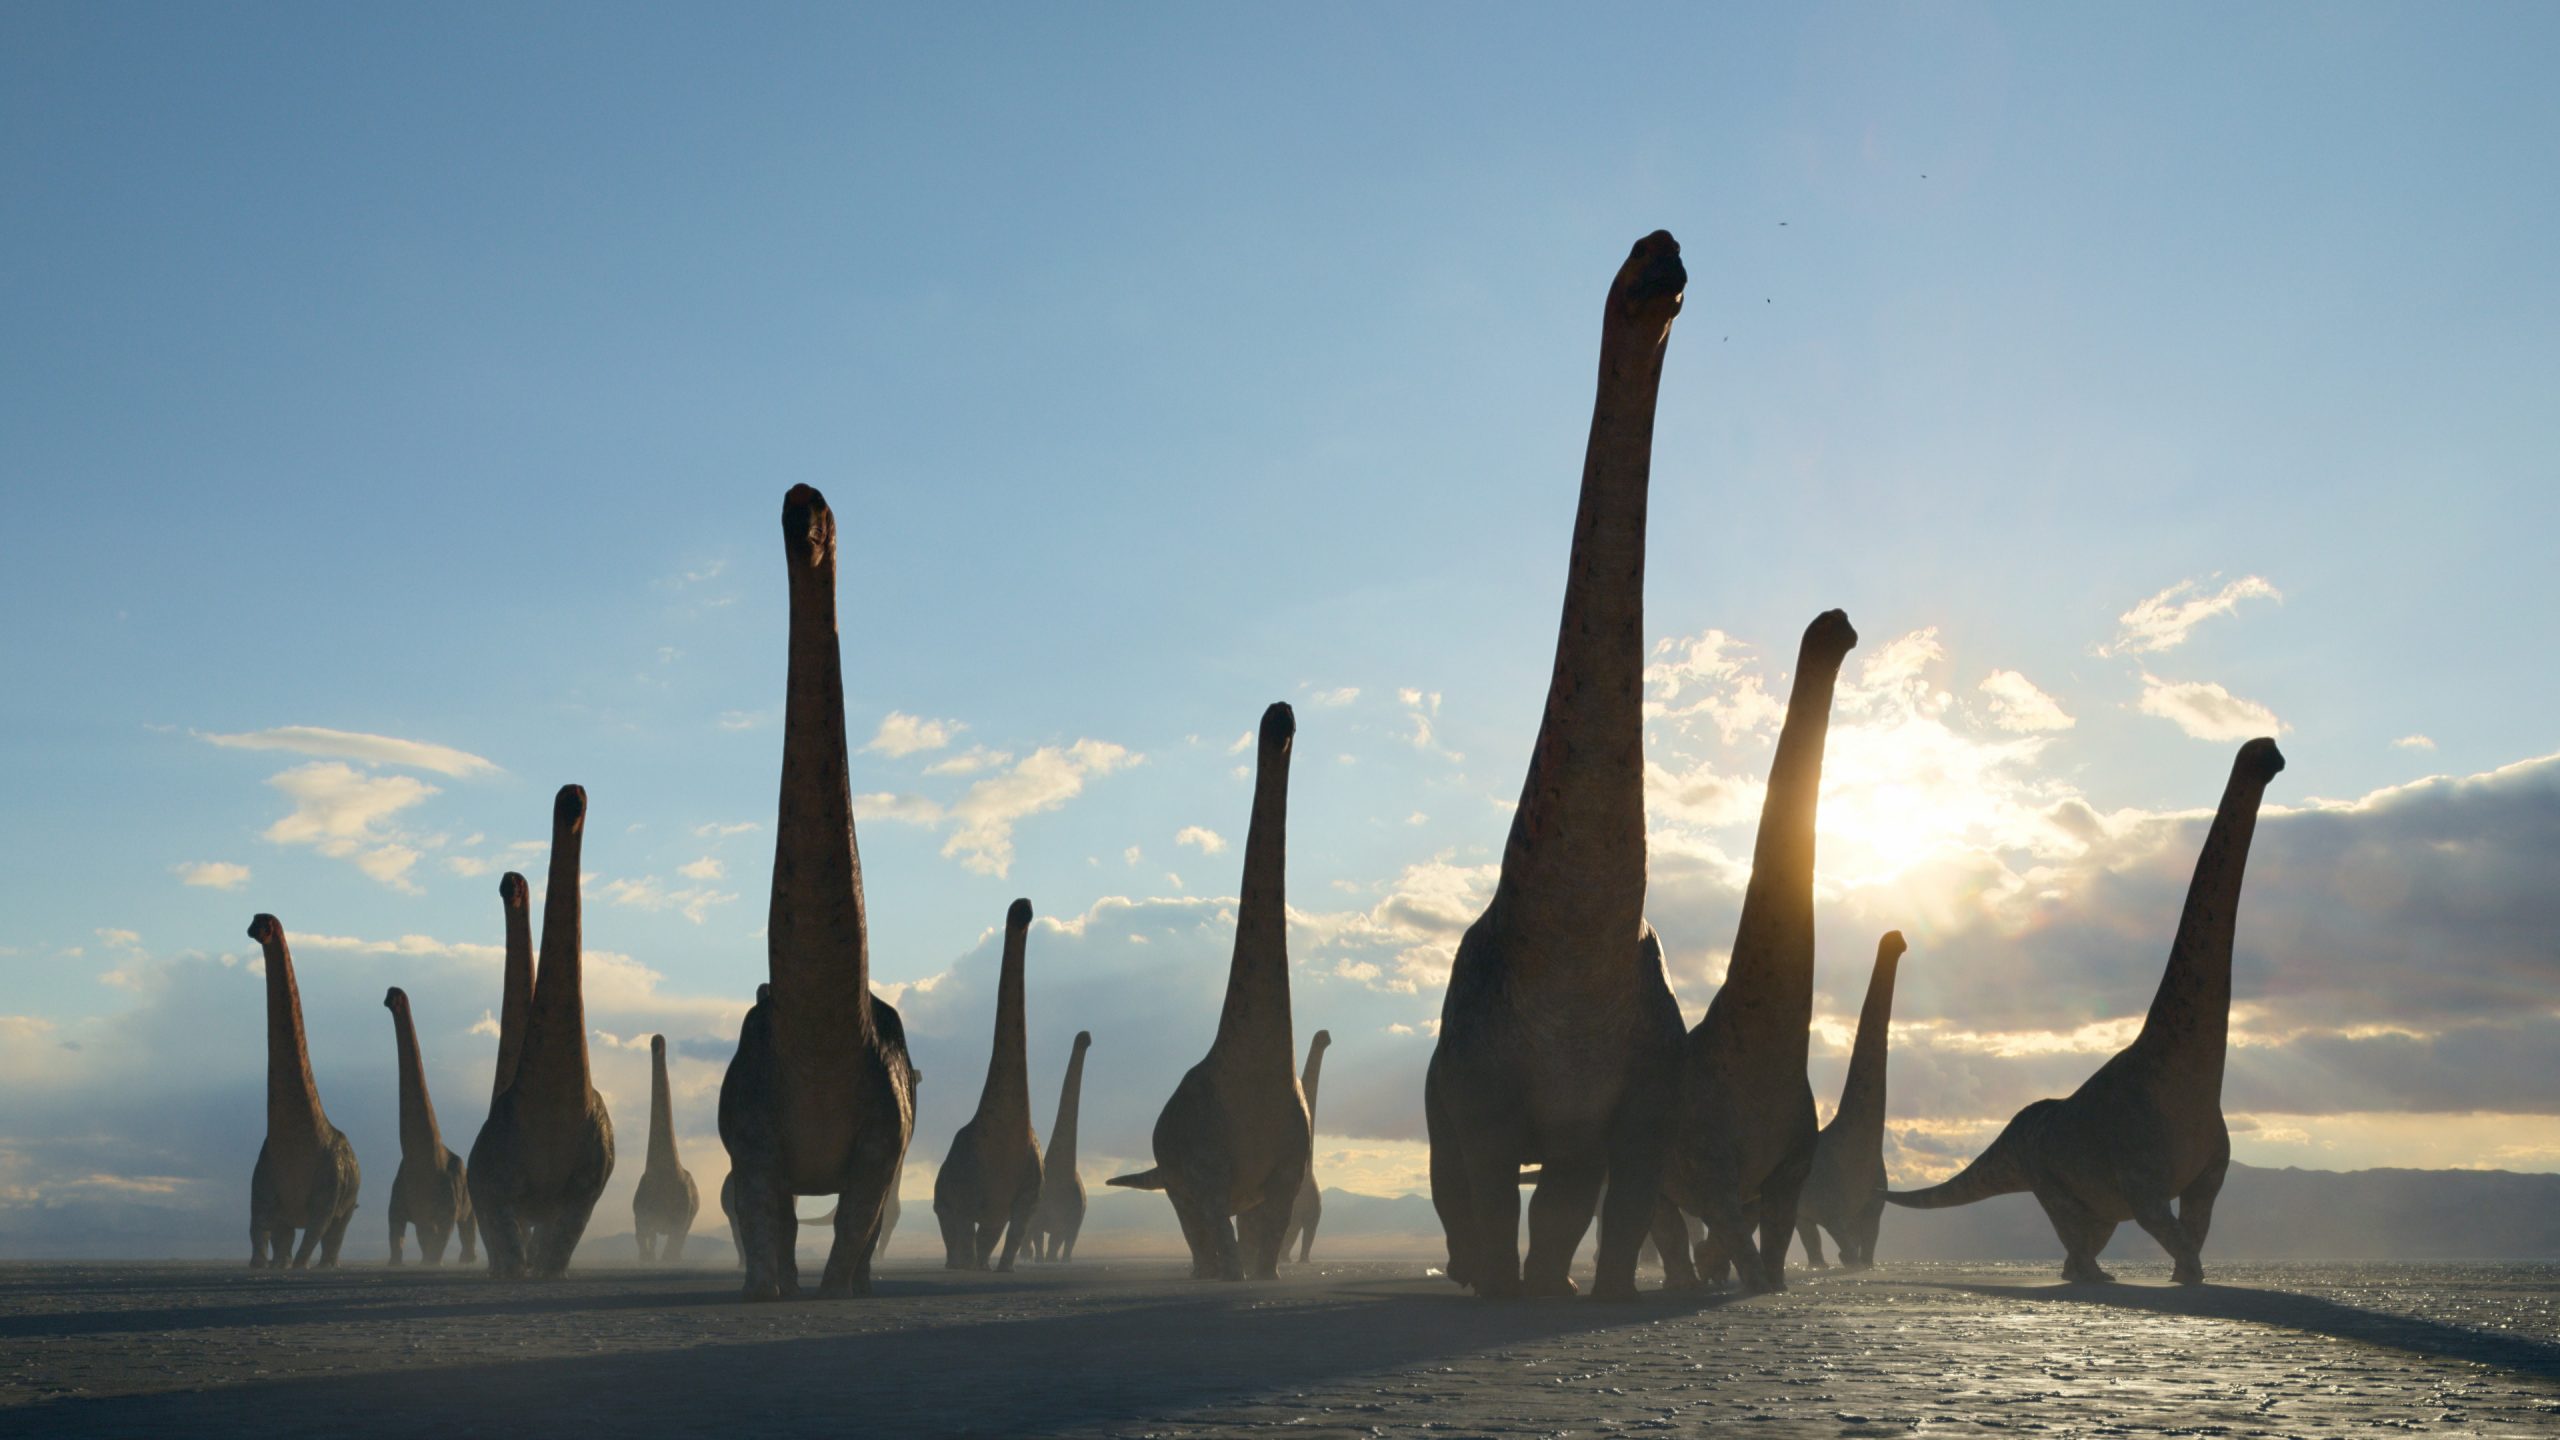 Сериал «Доисторическая планета»: как у документалки про динозавров может быть увлекательный сюжет 1